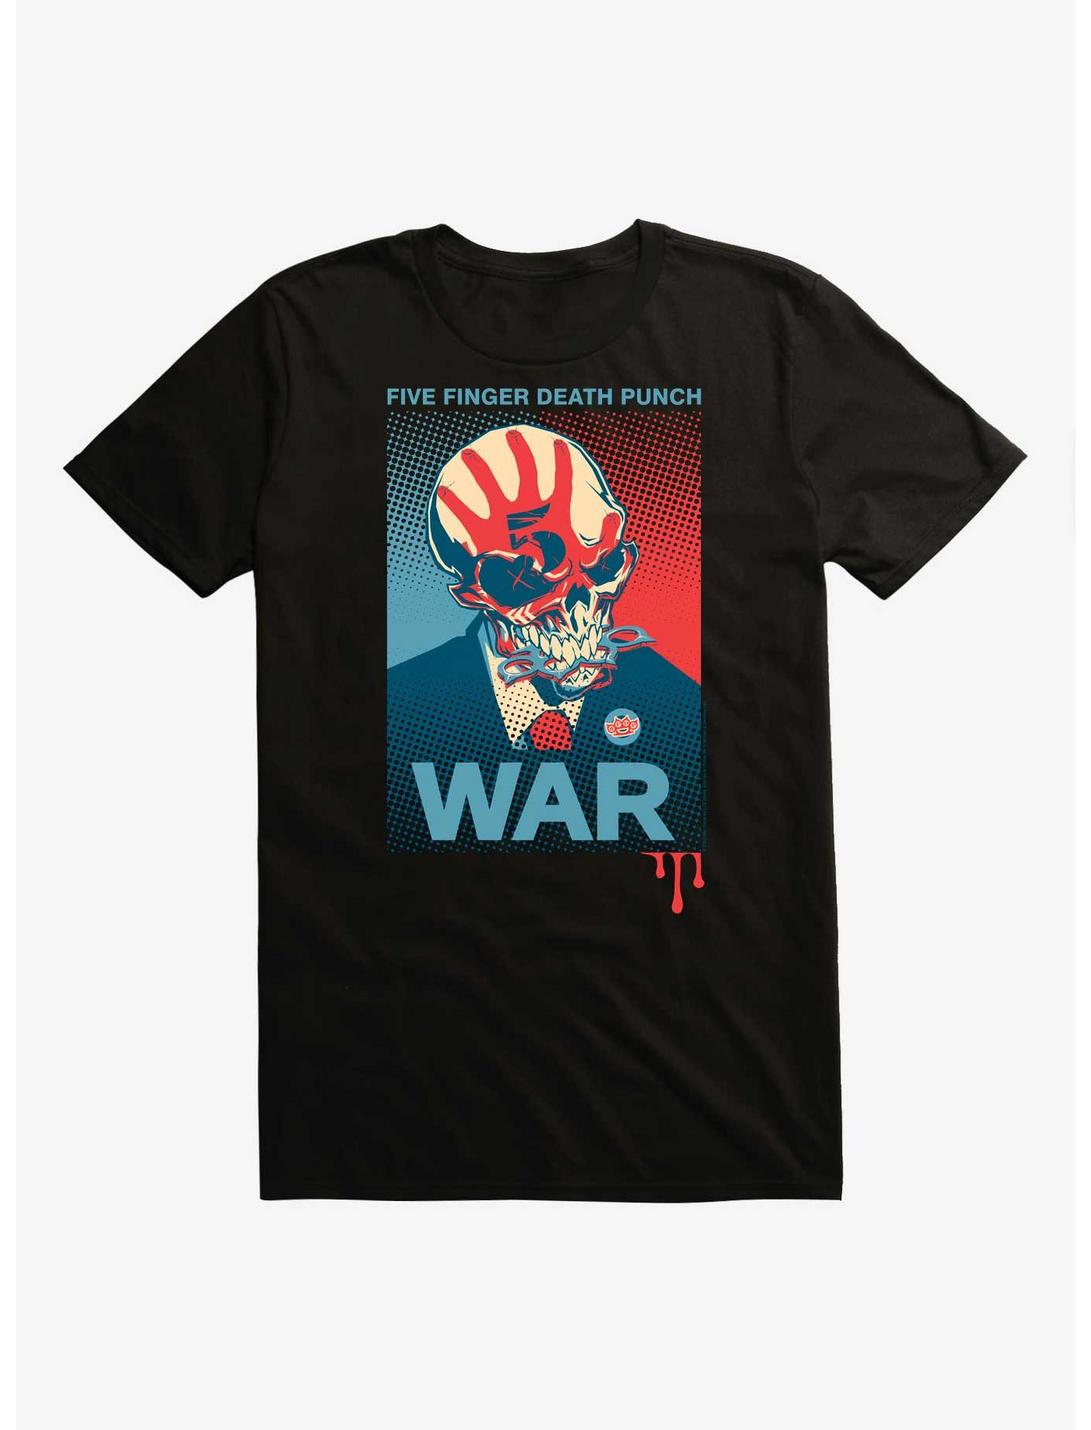 Fiver Finger Death Punch Knucklehead War Poster T-Shirt, BLACK, hi-res